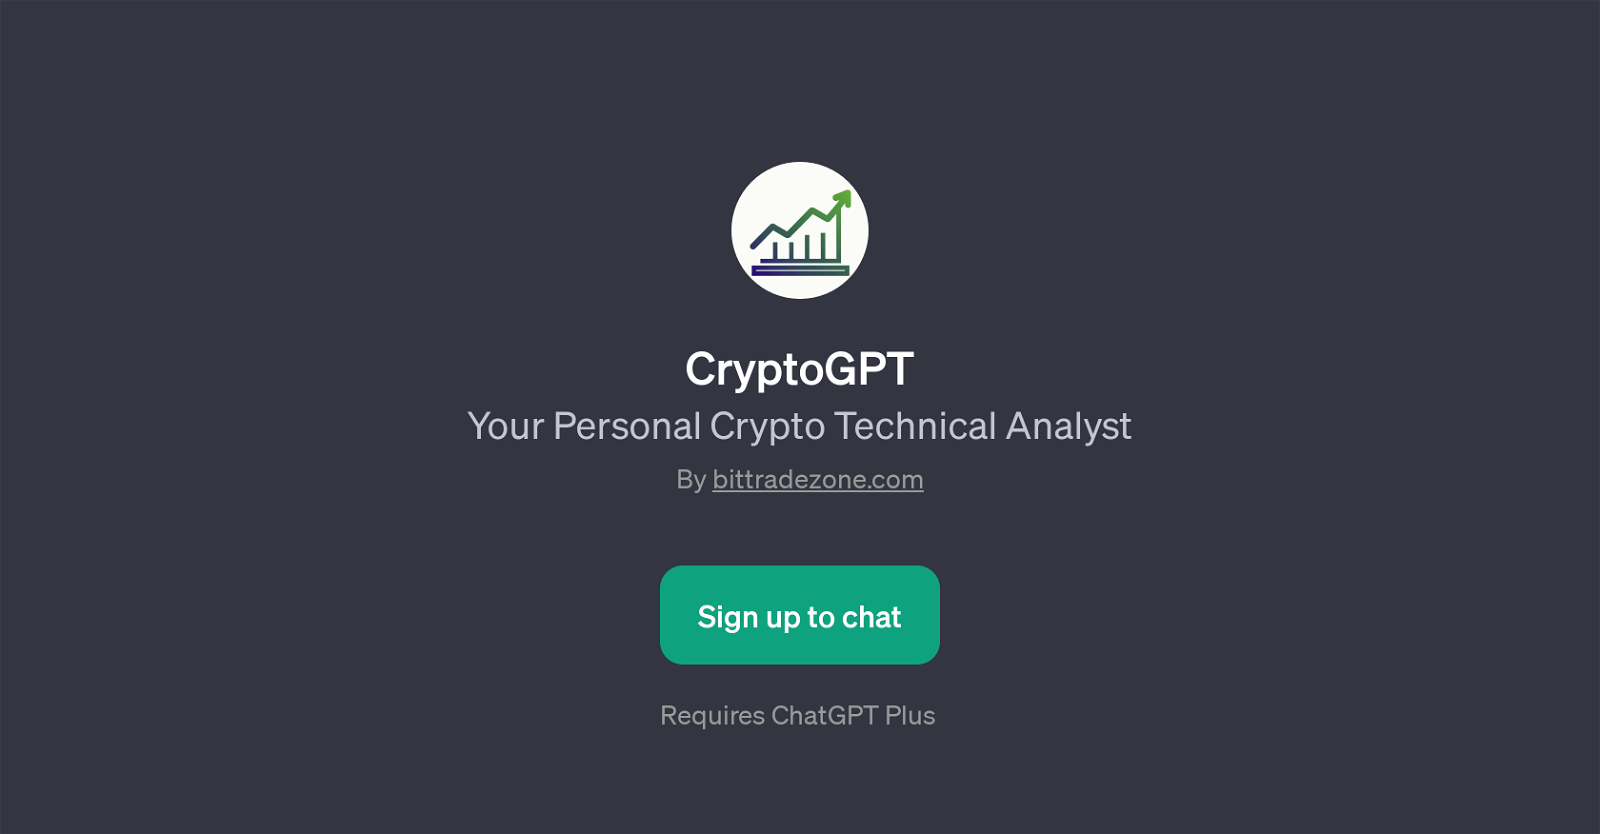 CryptoGPT website